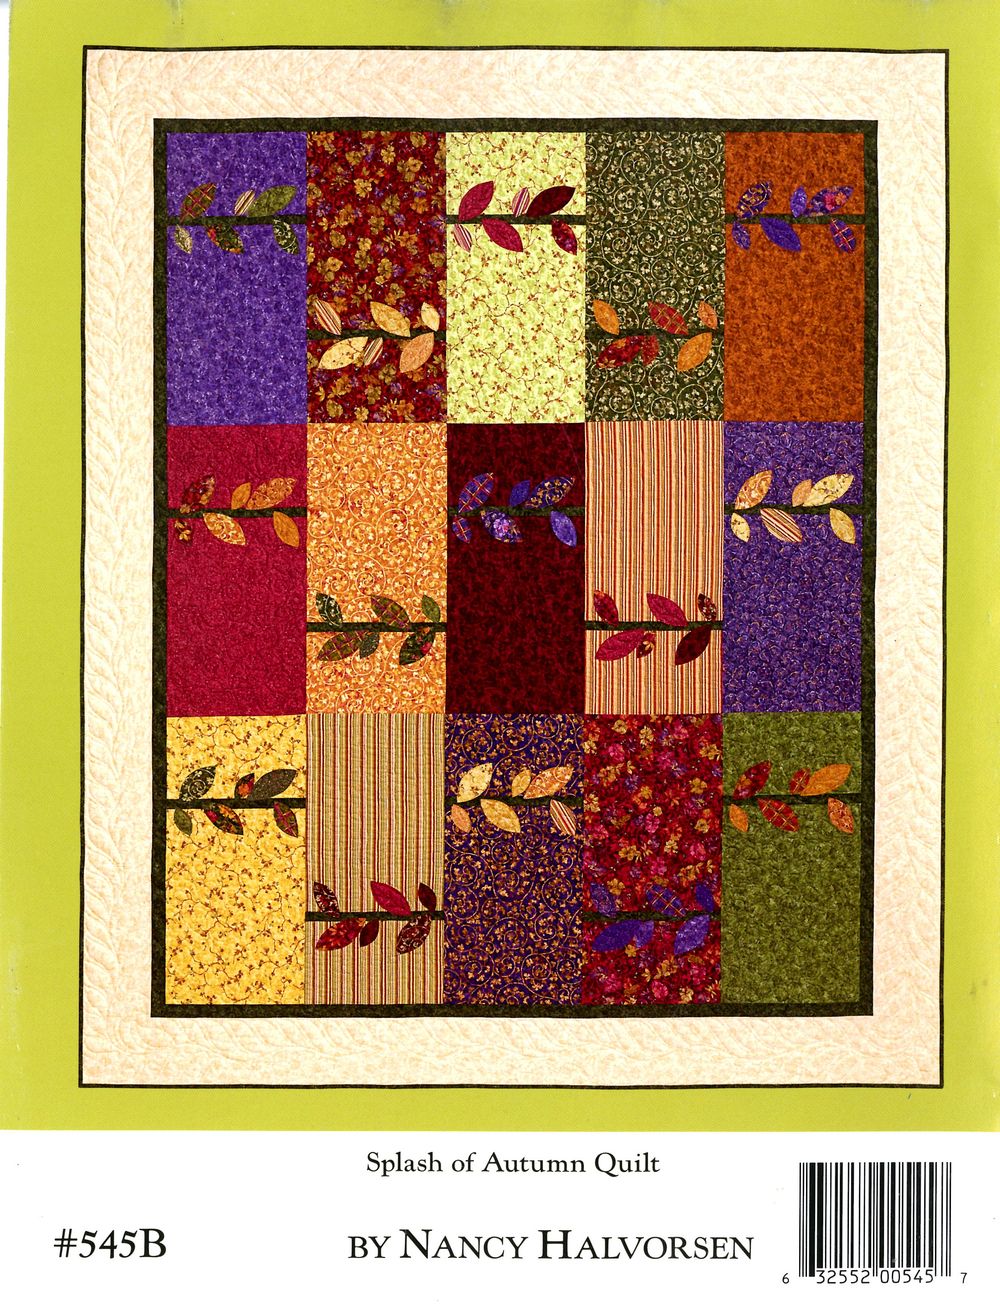 Bittersweet Quilt Pattern Book by Nancy Halvorsen of Art to Heart